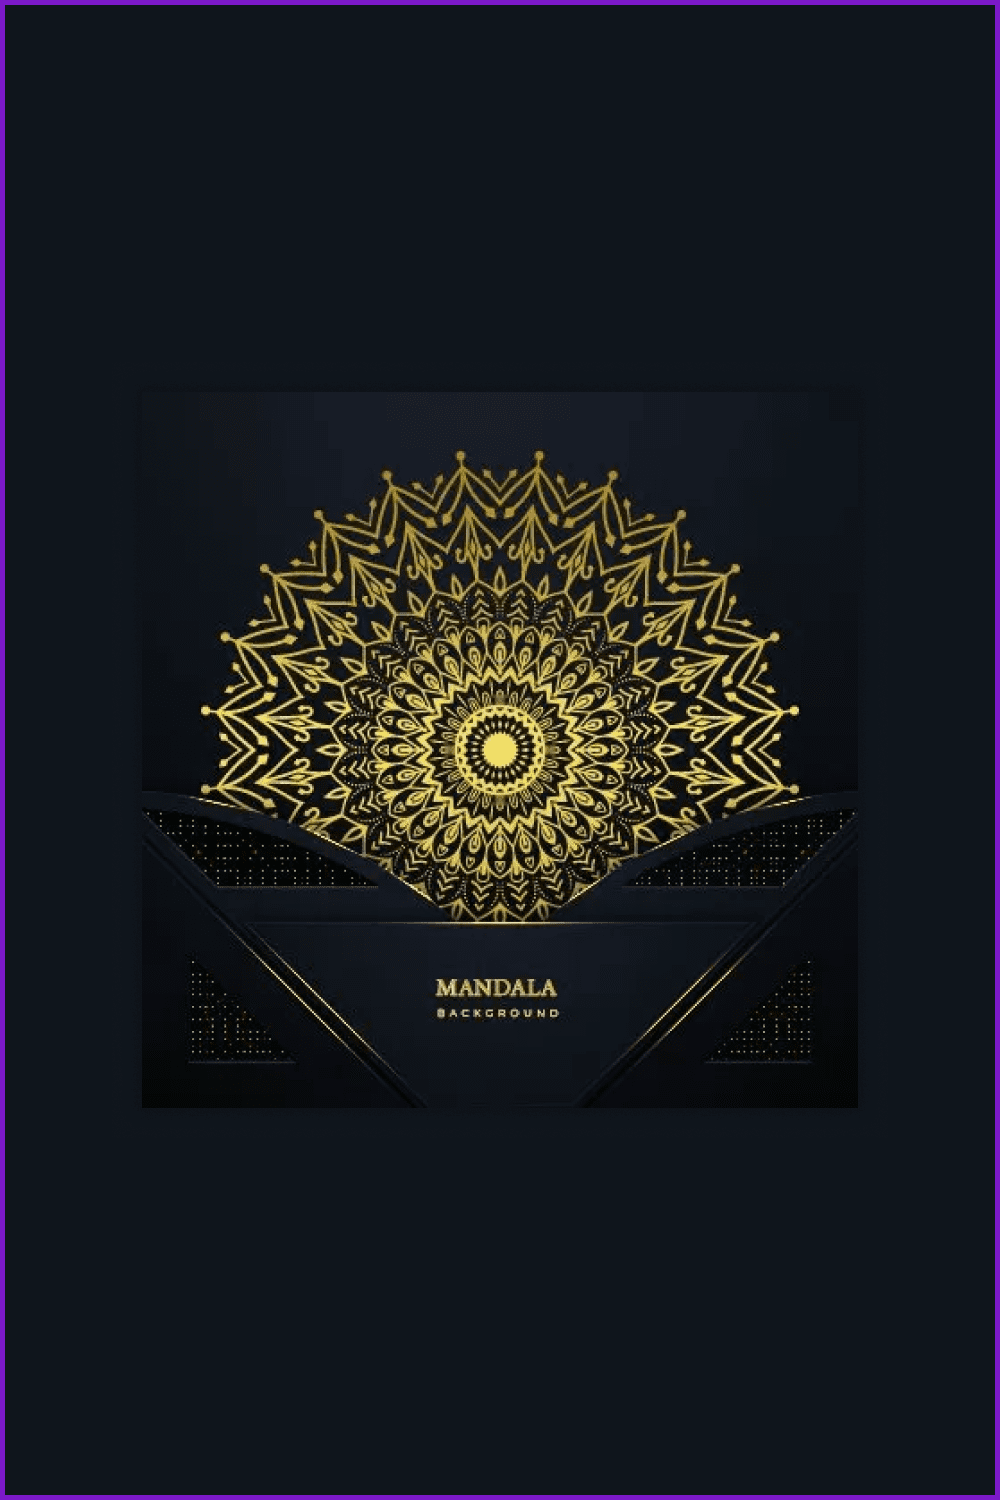 Gold beautiful mandala patterns on black backgrounds.